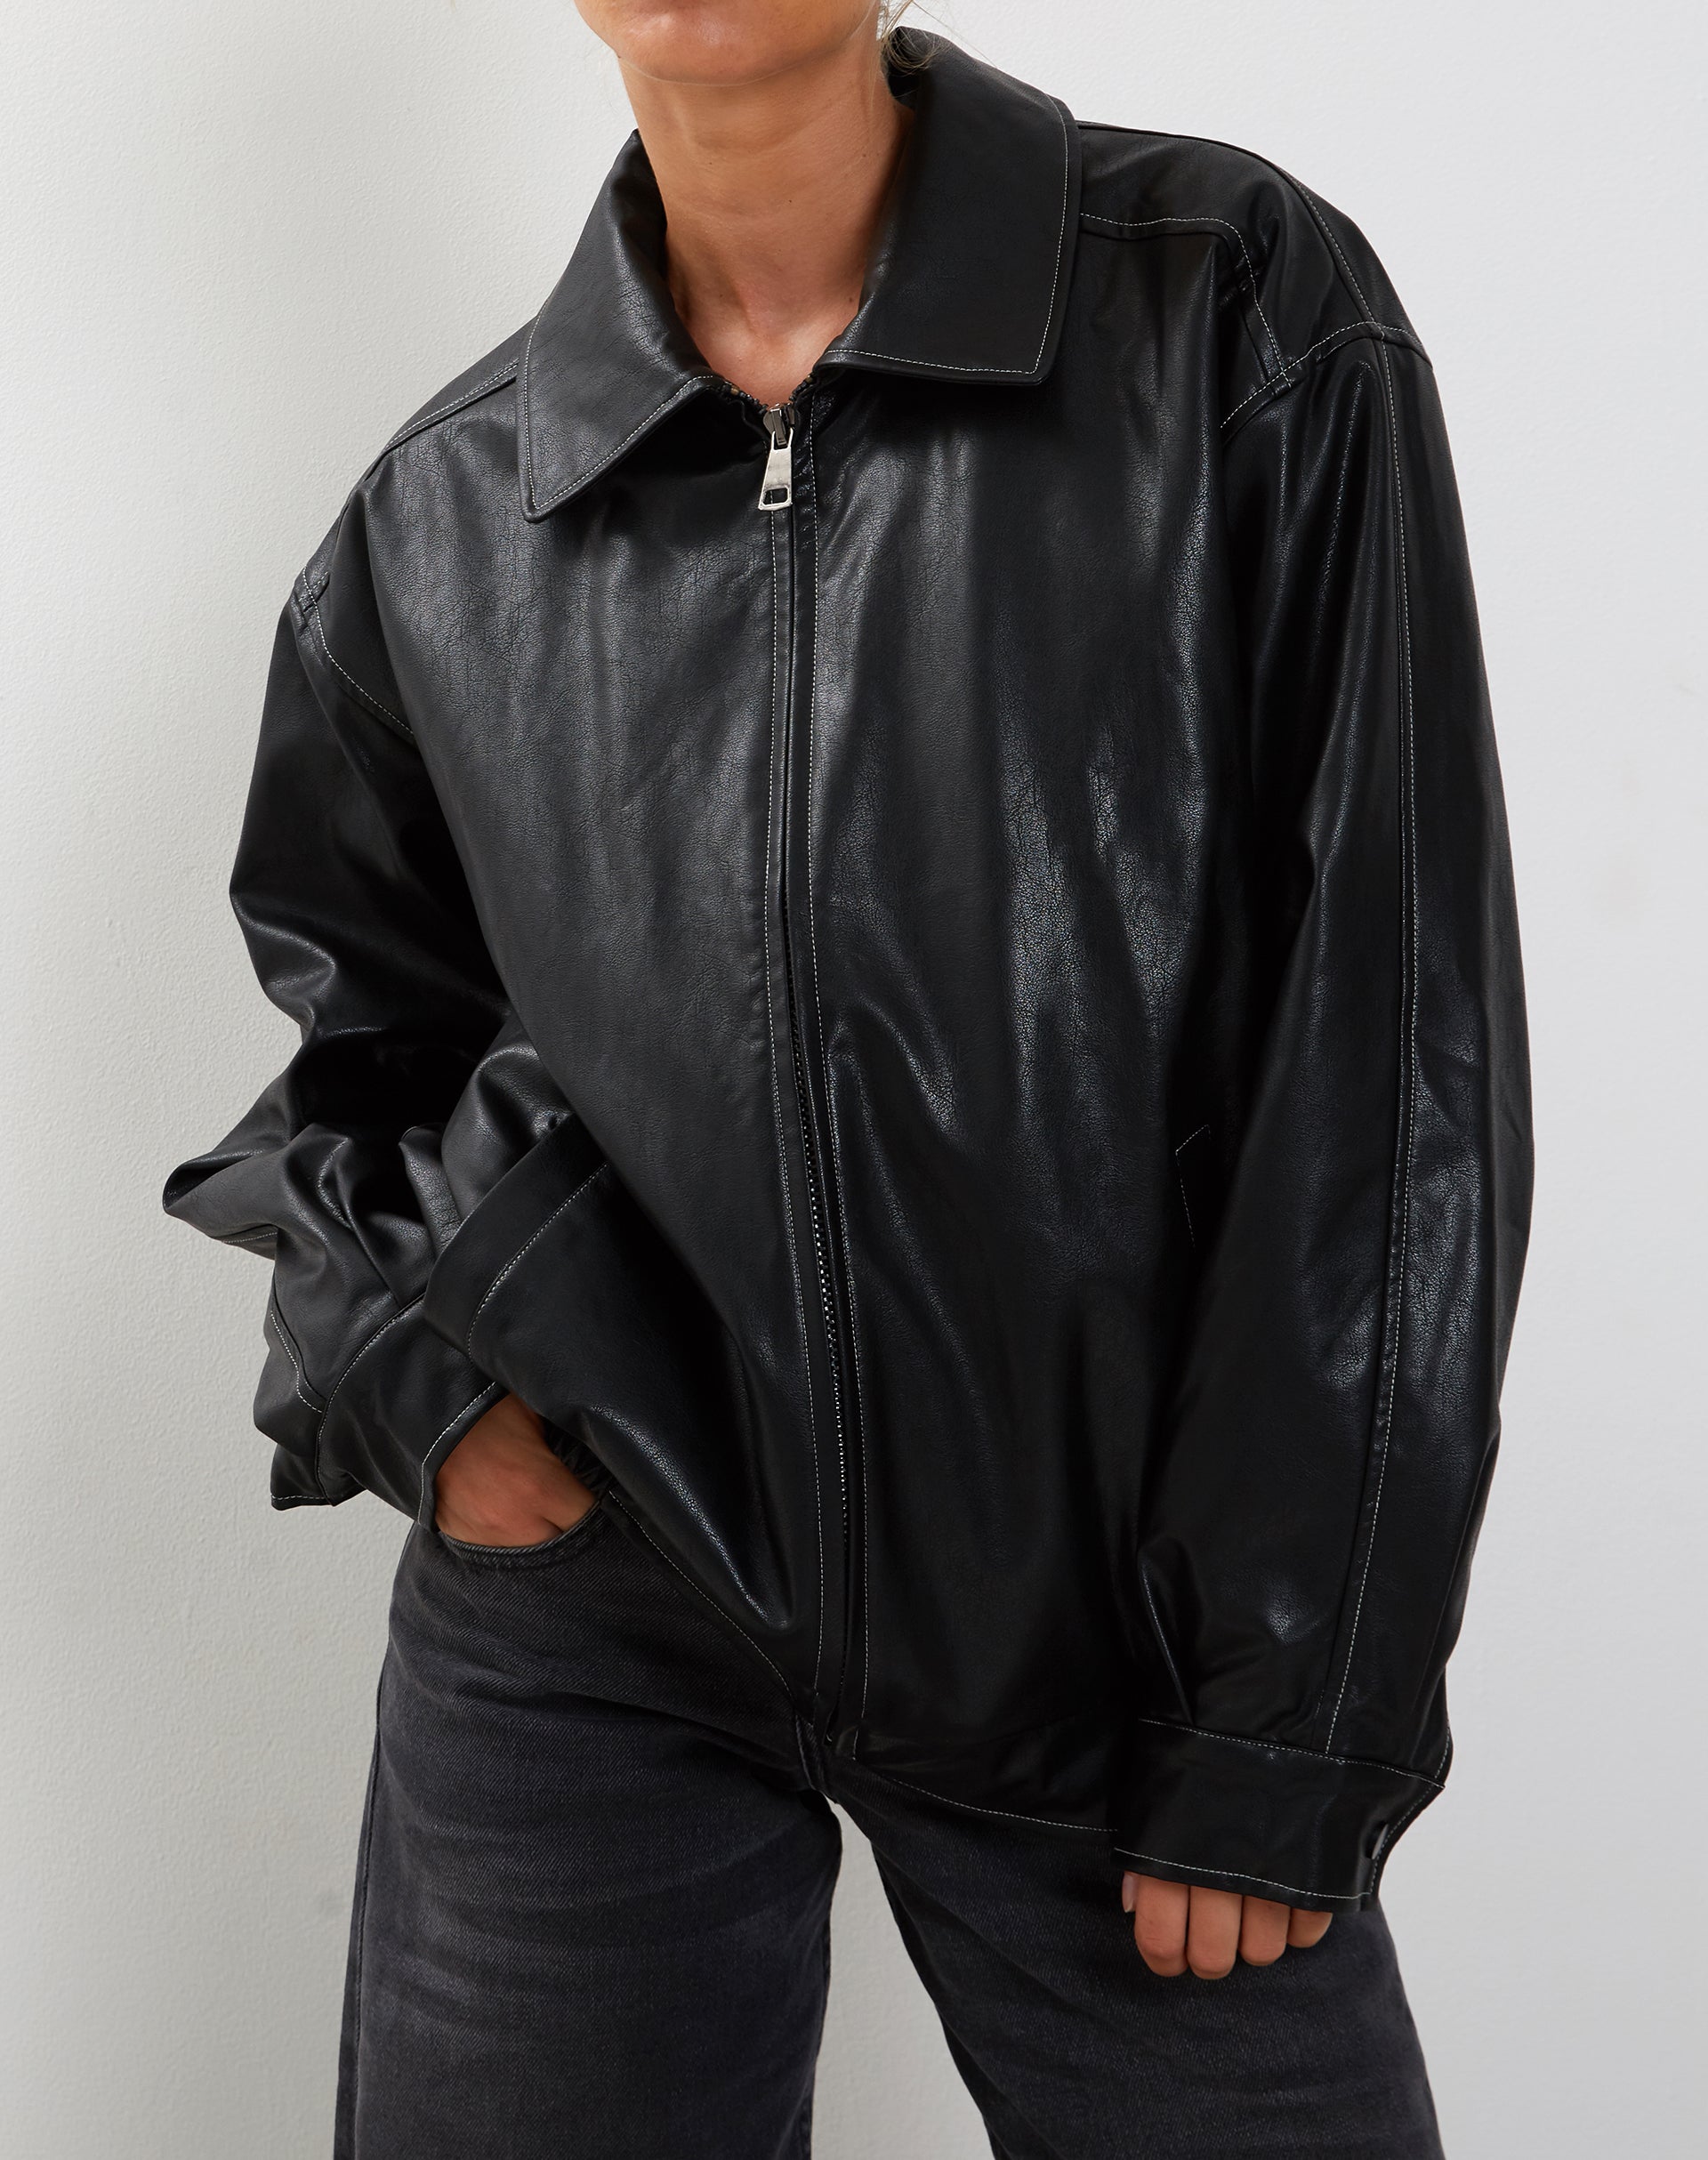 Imagen de la chaqueta Cavita en negro con pespunte gris